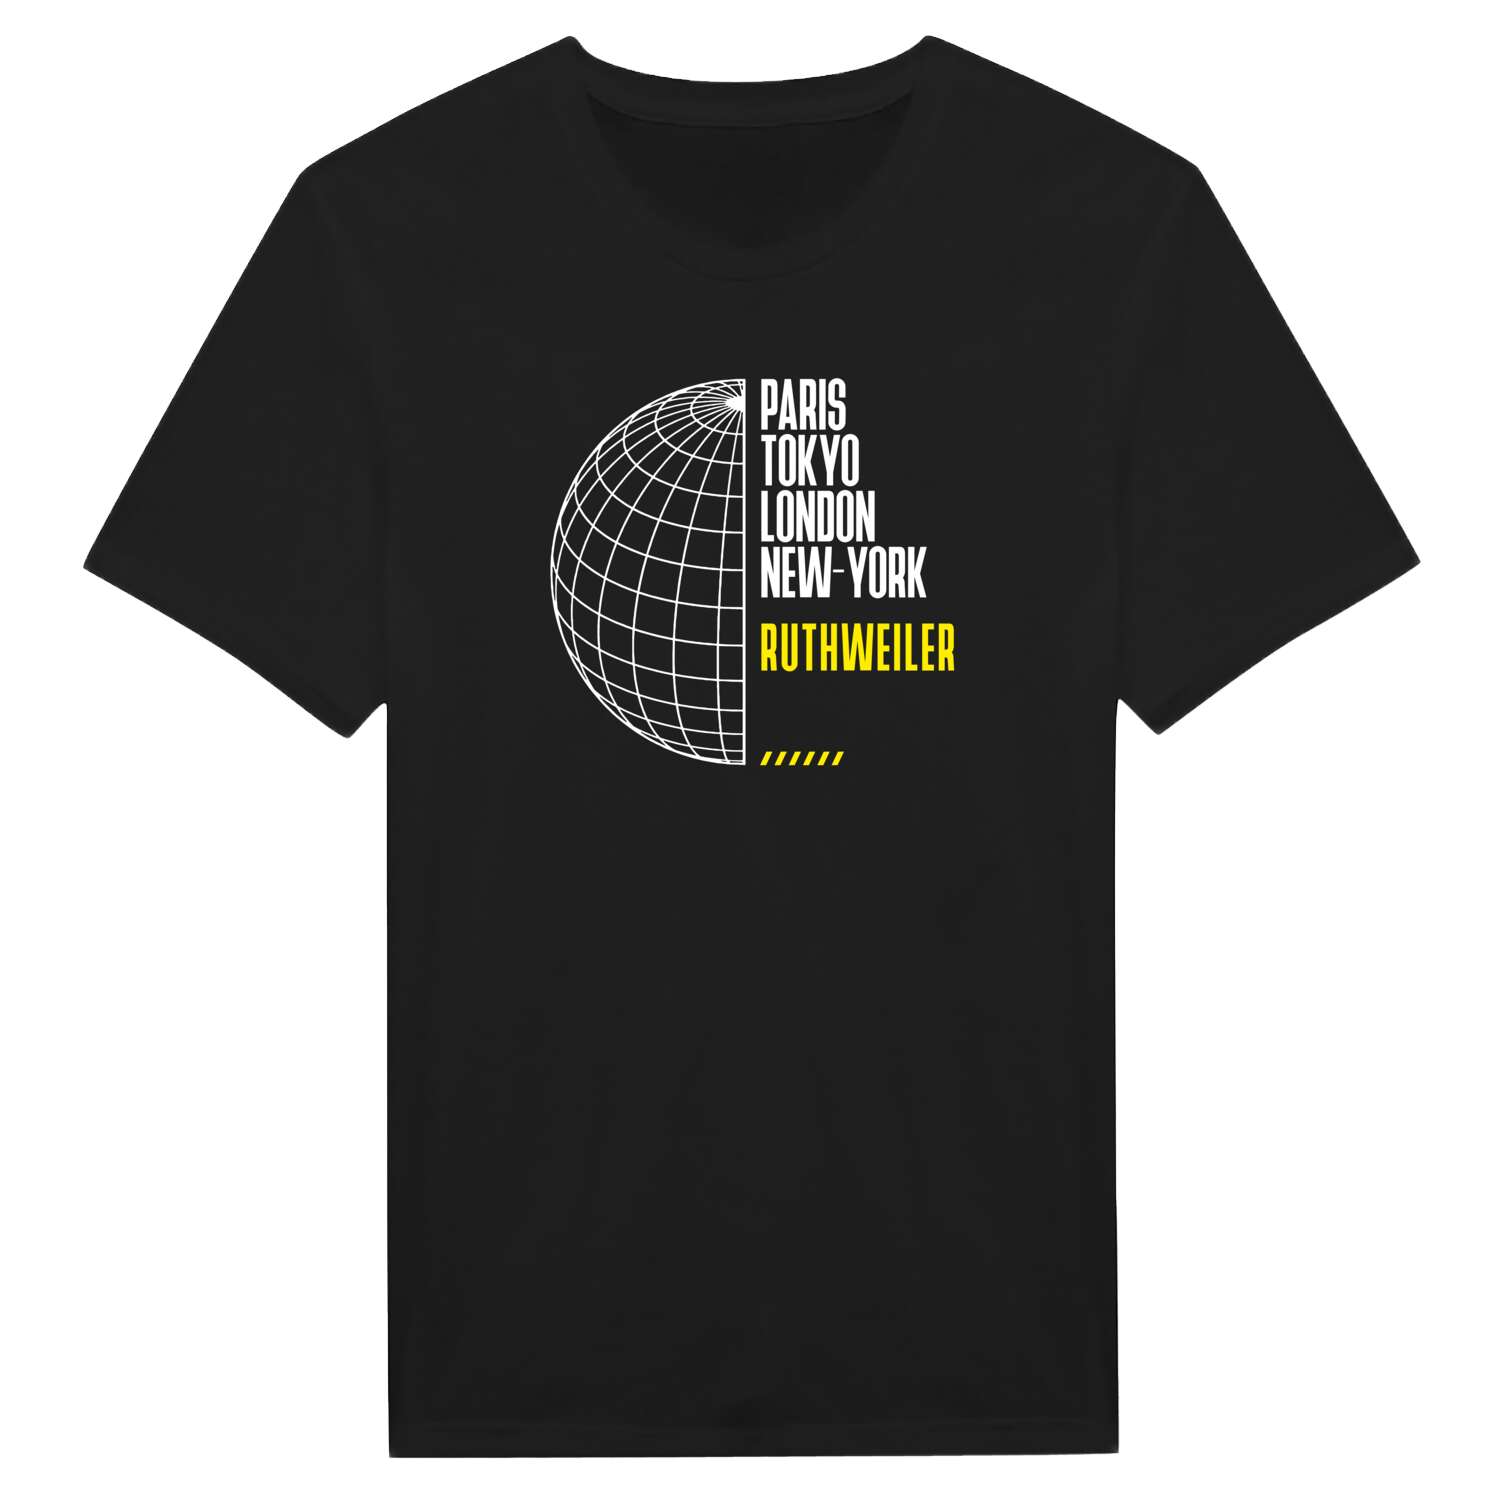 Ruthweiler T-Shirt »Paris Tokyo London«